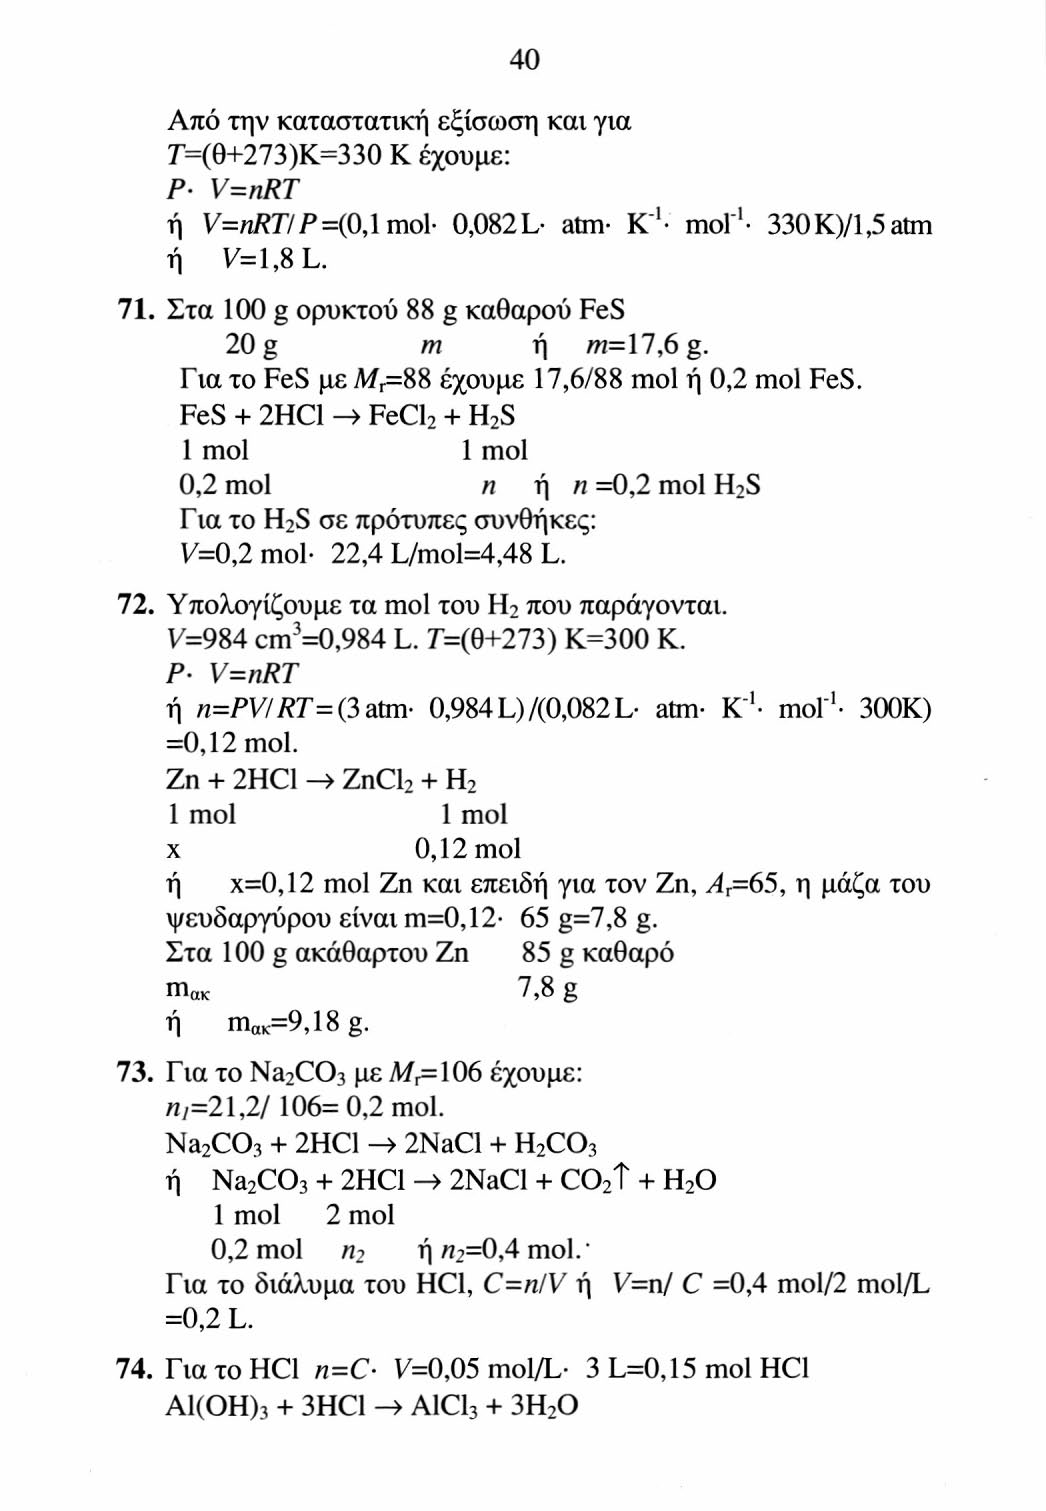 41 1 mol 3 mol η 0,15 mol ή «=0,05 mol Al(OH) 3. Γ ια το Al(OH) 3 με M r =78 έχουμε πι=0,05 78 g=3,9 g. 75. Για το υδρογόνο ni=v IV m = 44,8 L/ 22,4 L/mol = 2 mol H 2.